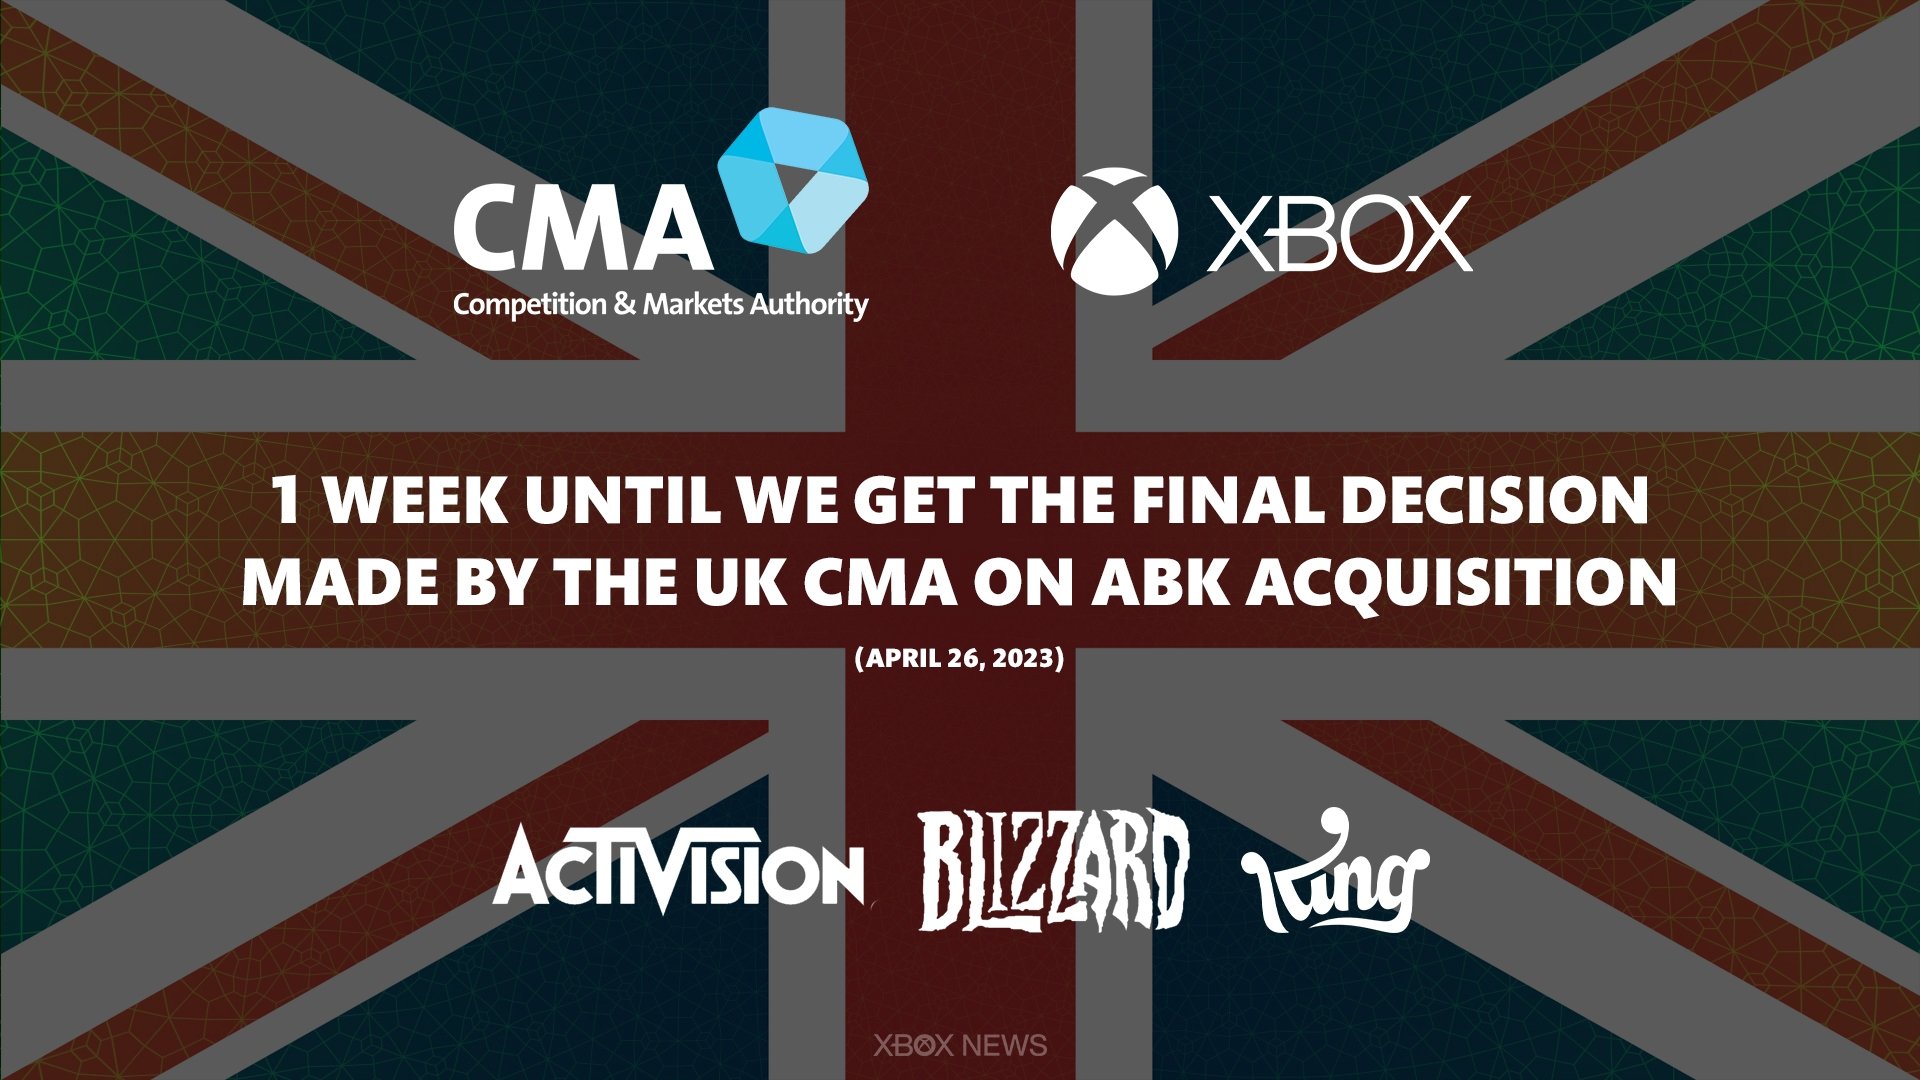 تم حظر الاستحواذ على Microsoft Activision Blizzard من قبل المنظمين في المملكة المتحدة